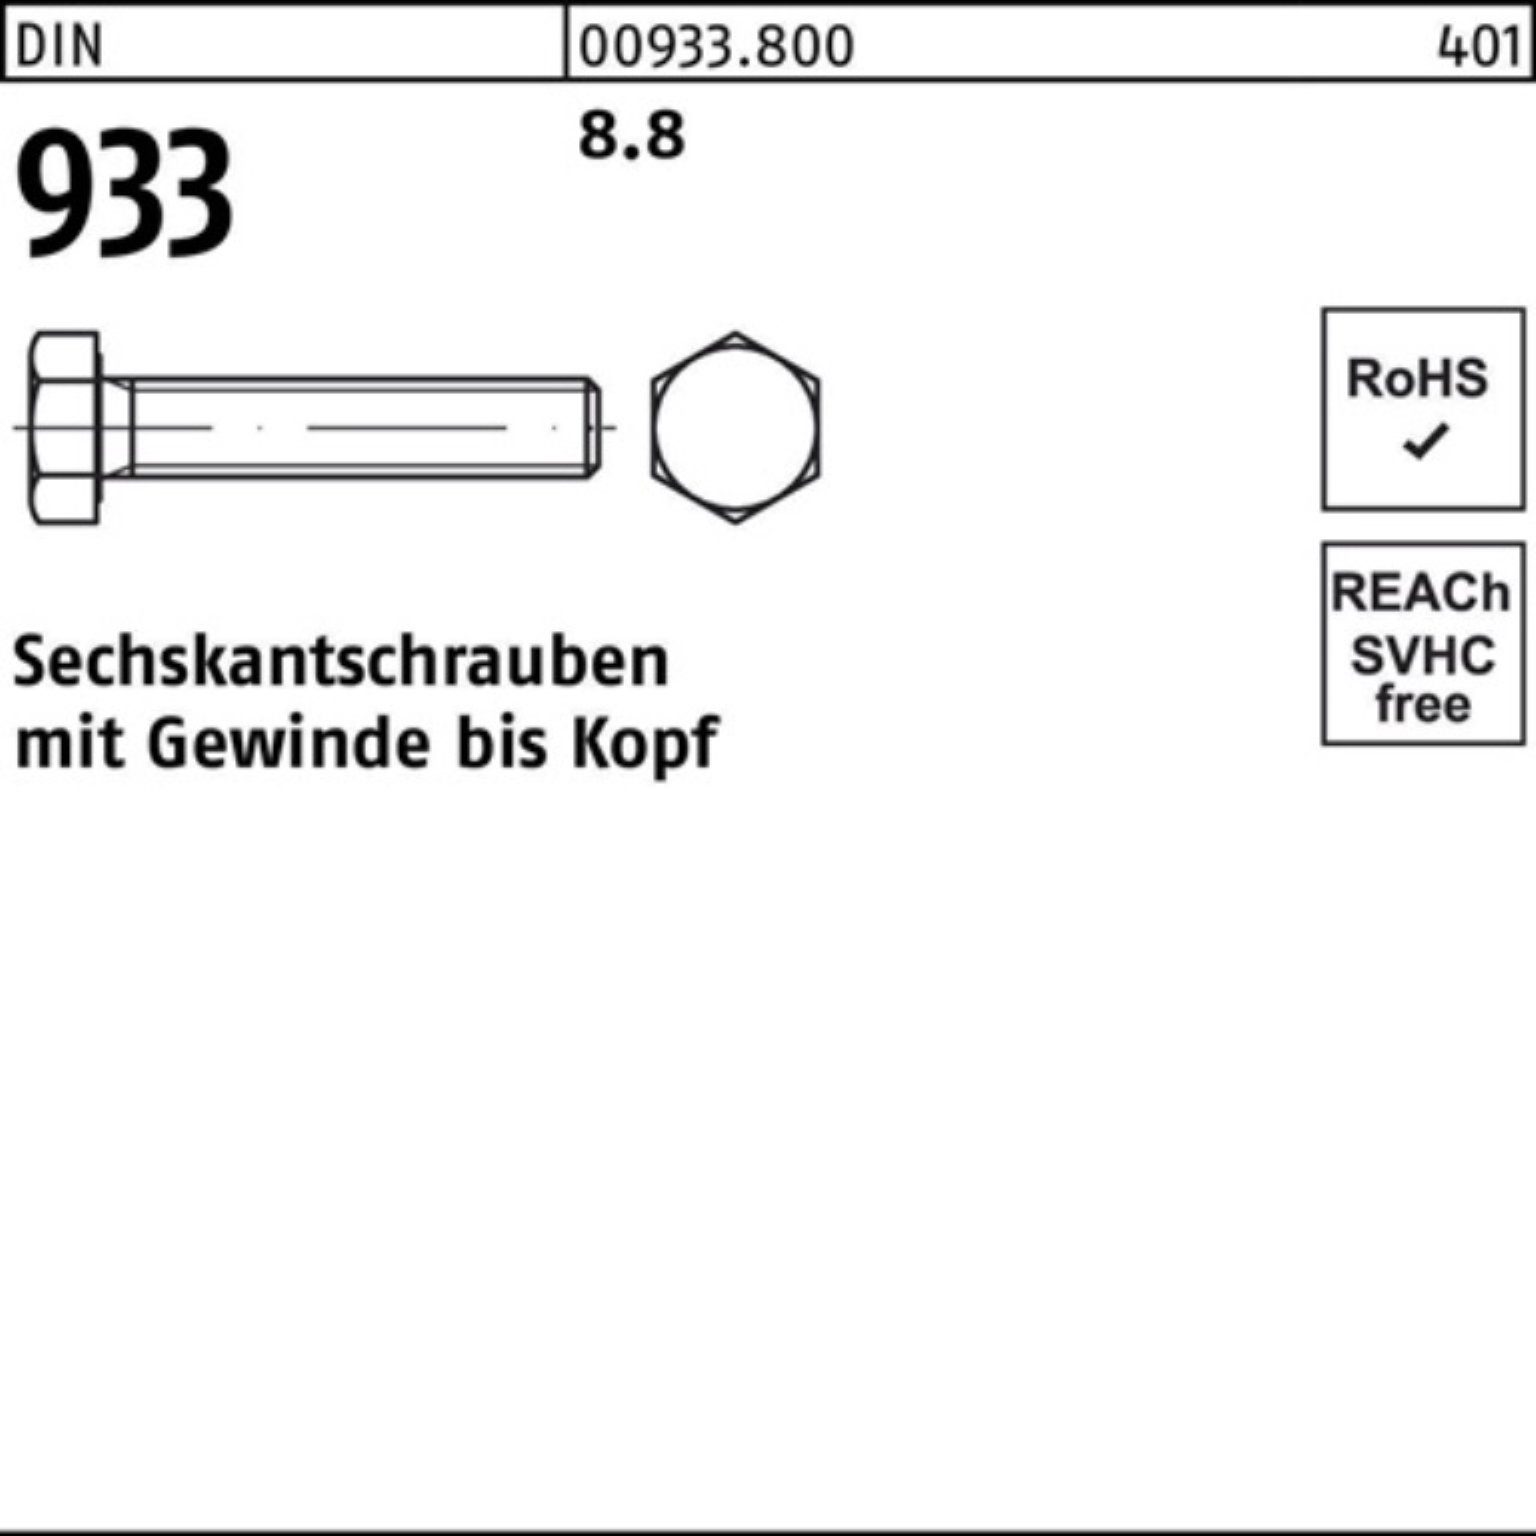 Sechskantschraube Stück Sechskantschraube 933 M10x DIN Reyher 8.8 VG 100er 933 100 DIN 80 Pack